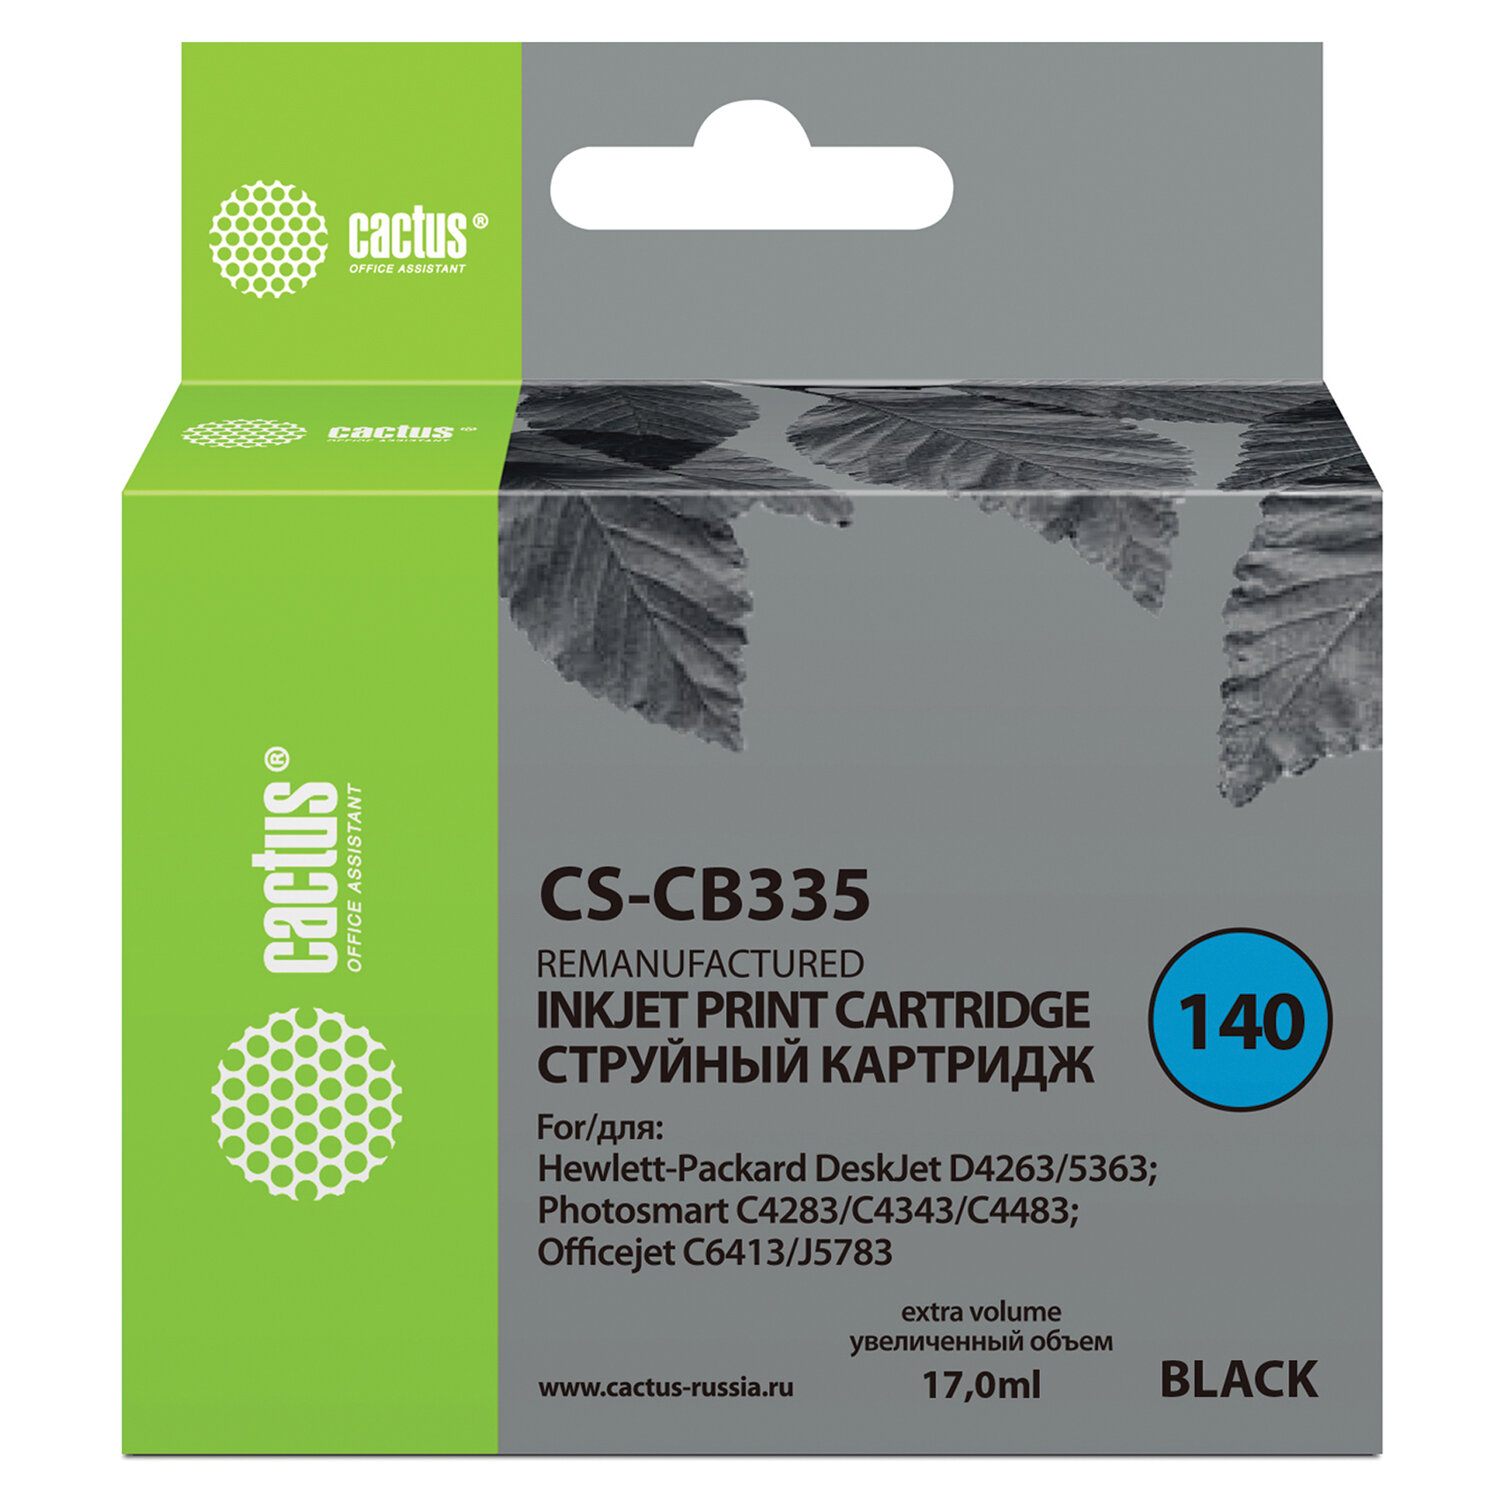  CACTUS CS-CB335